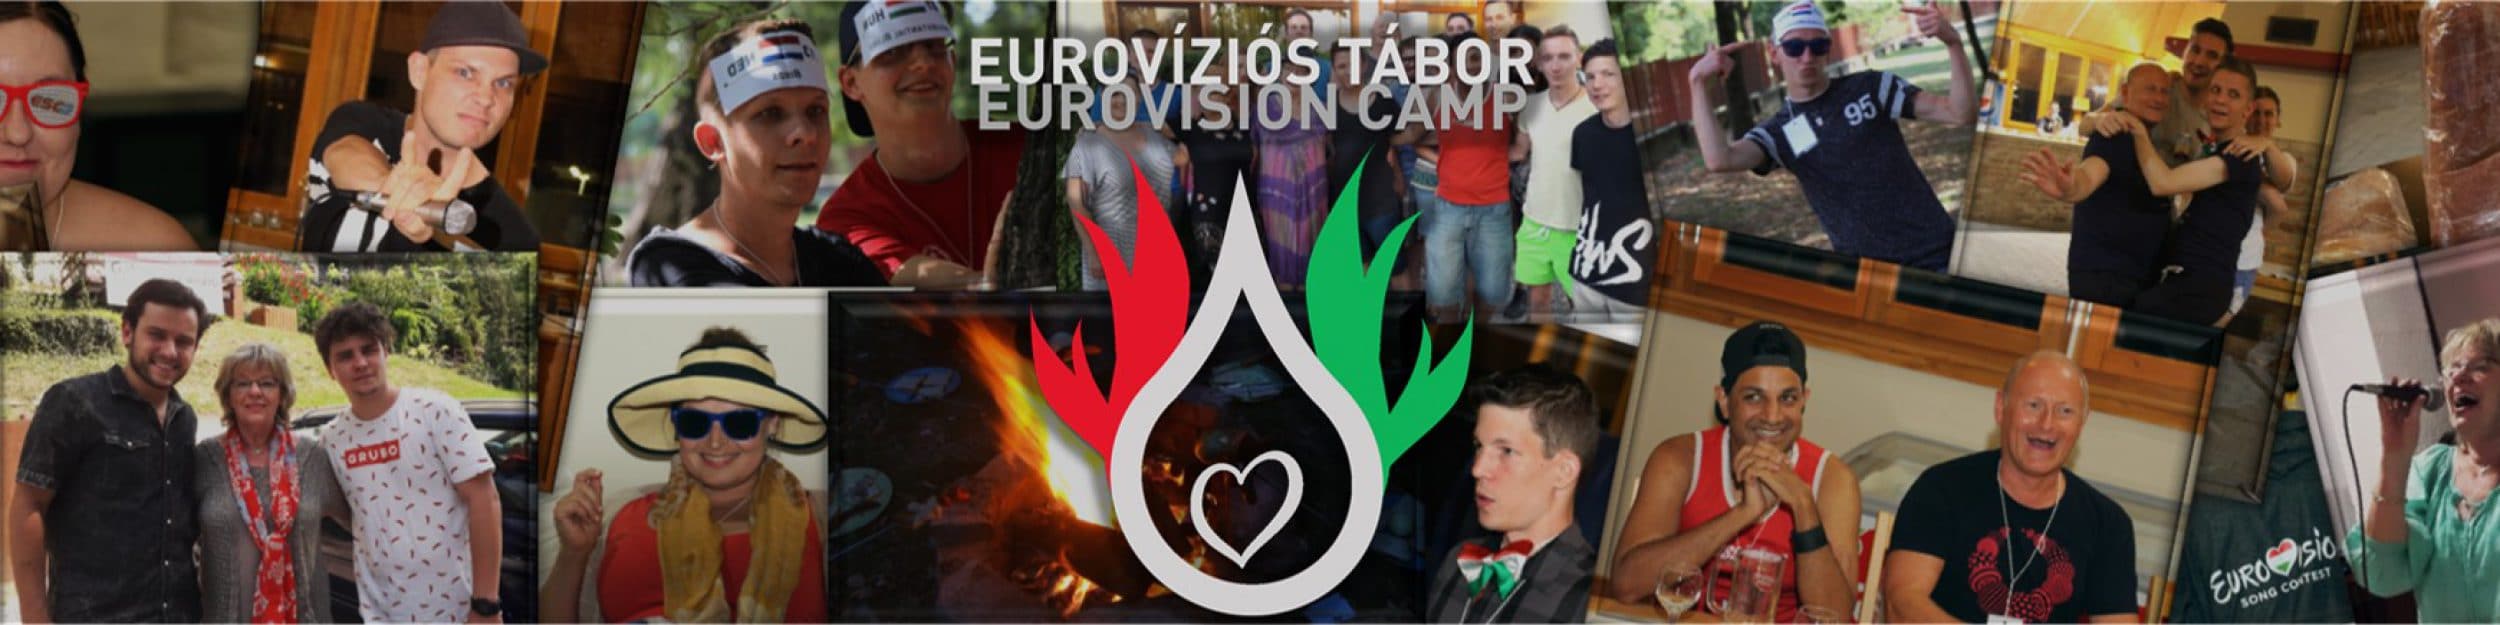 Eurovíziós Tábor – Eurovision Camp